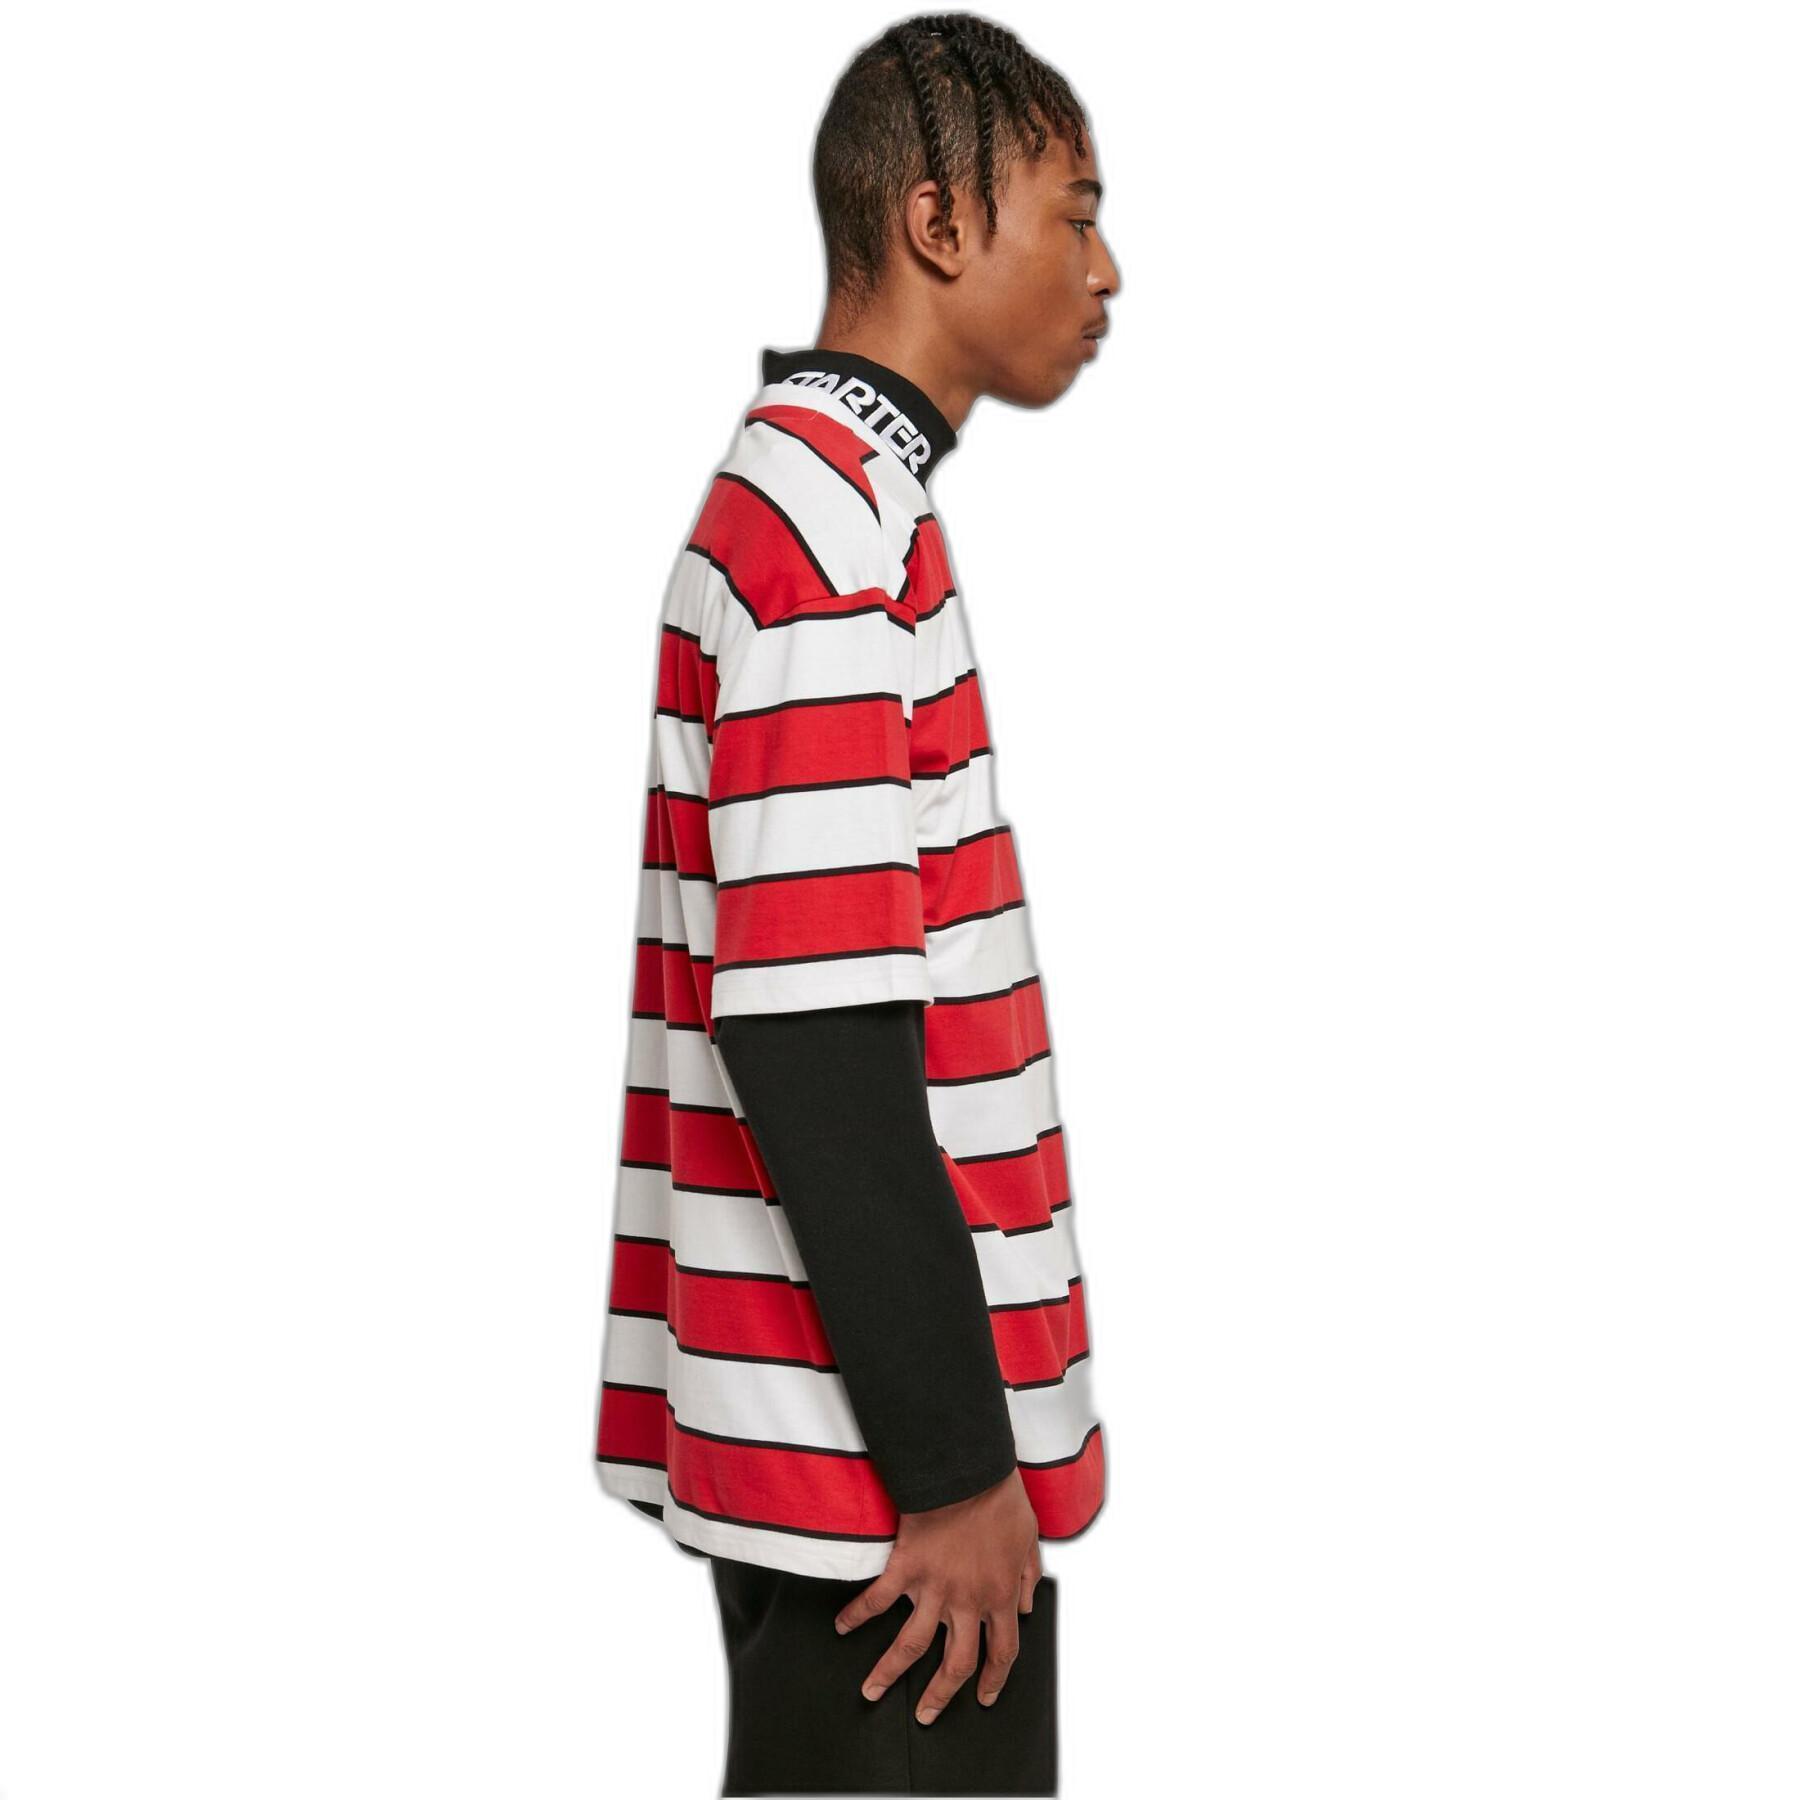 Striped T-shirt Urban Classics Starter Block